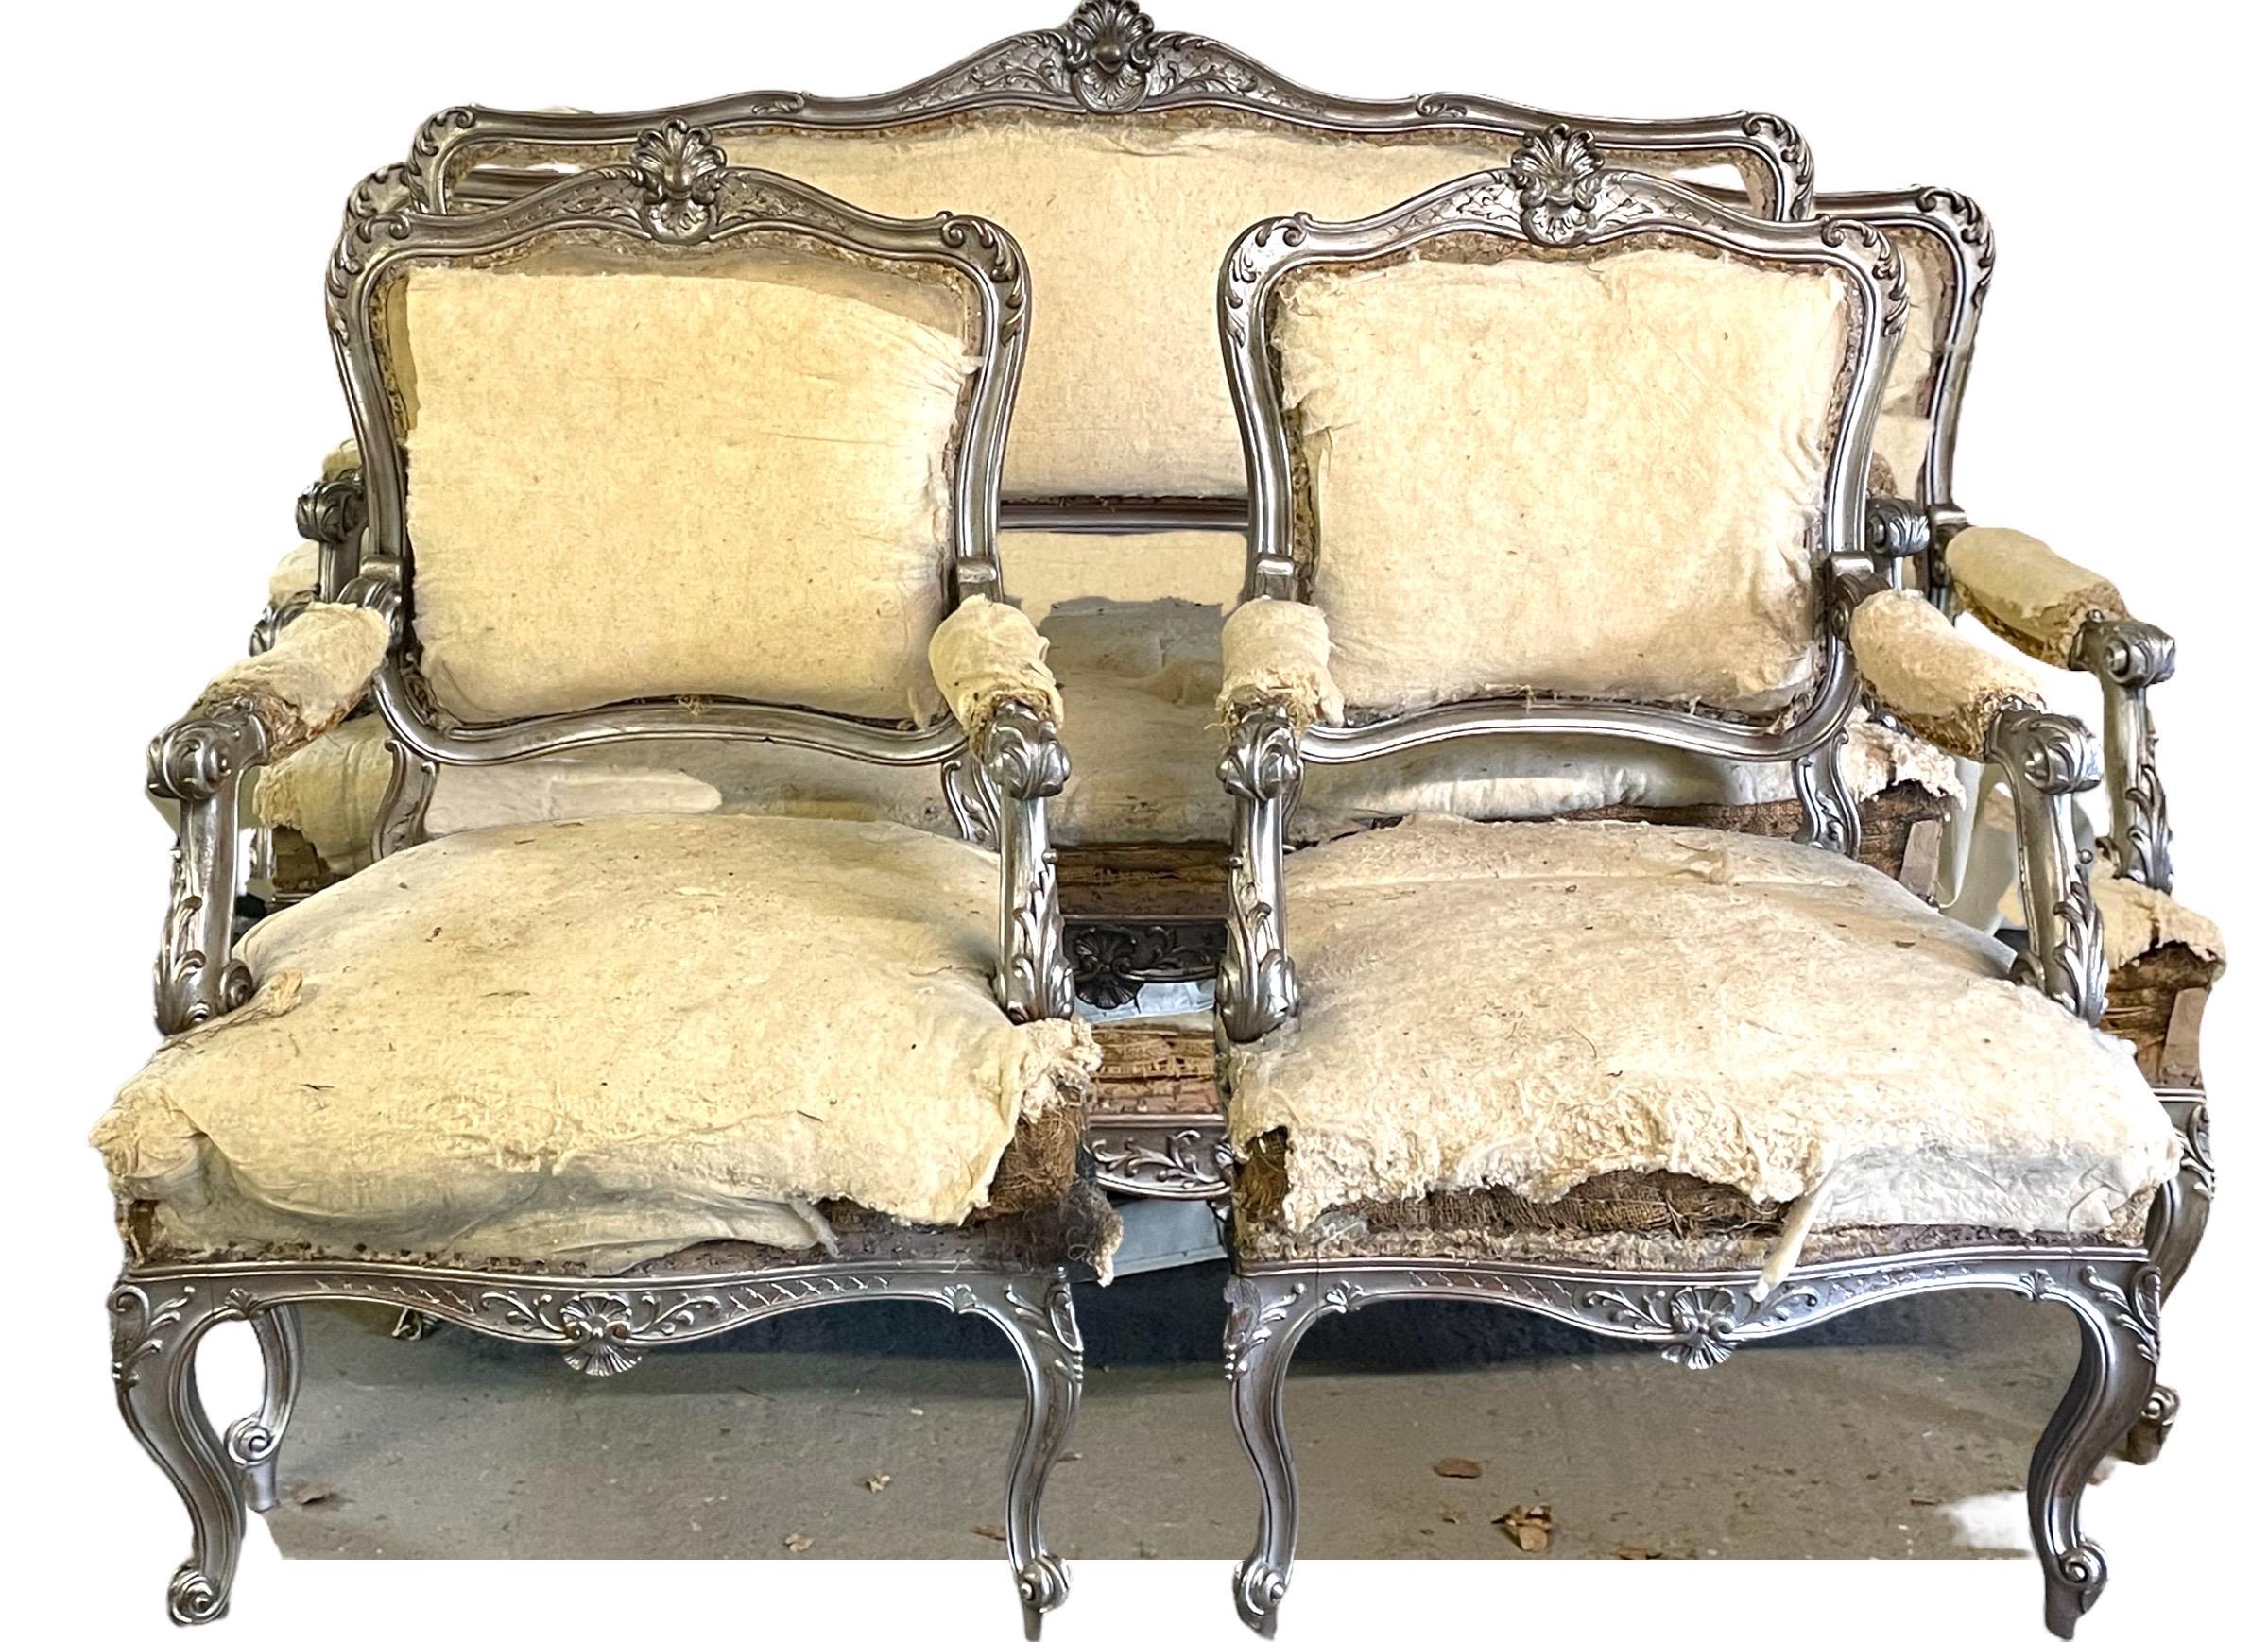 Suite de salon de style Louis XV en argent, bois doré et sculpté, composée de trois pièces
Très bel ensemble de salon original en noyer, comprenant un canapé et deux fauteuils. L'ensemble a été partiellement décapé et est prêt à être restauré. Les